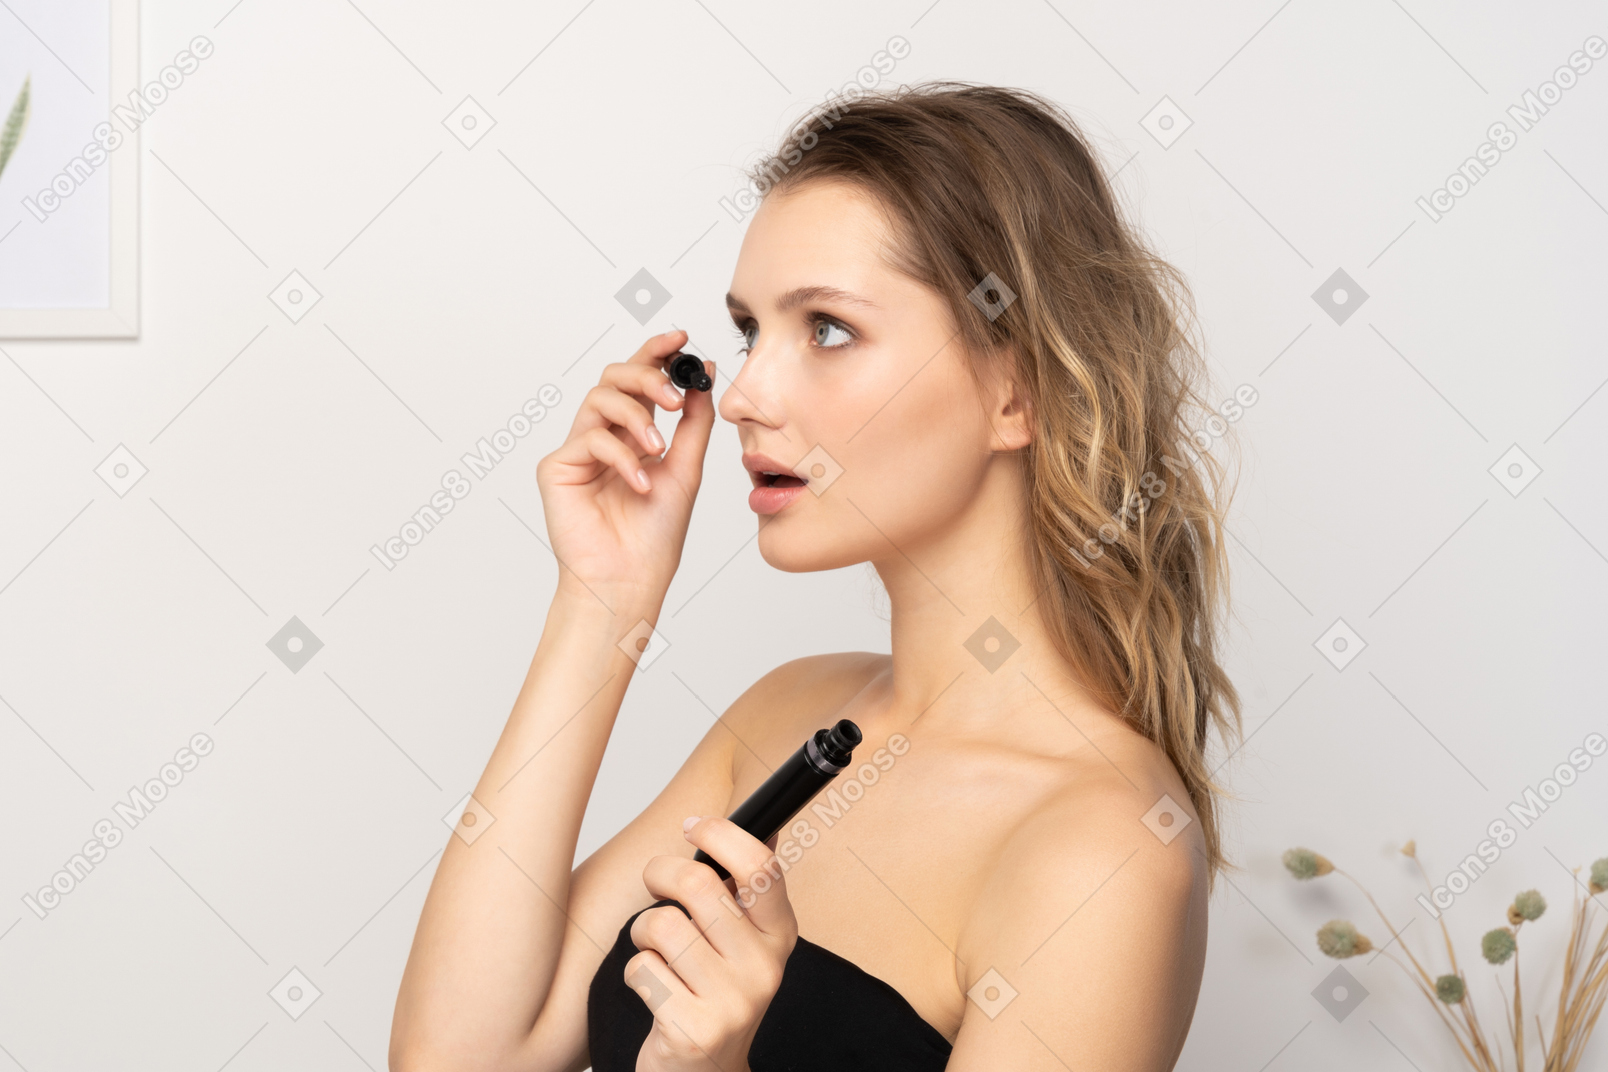 Vista di tre quarti di una giovane donna sorpresa che indossa un top nero mentre applica il mascara